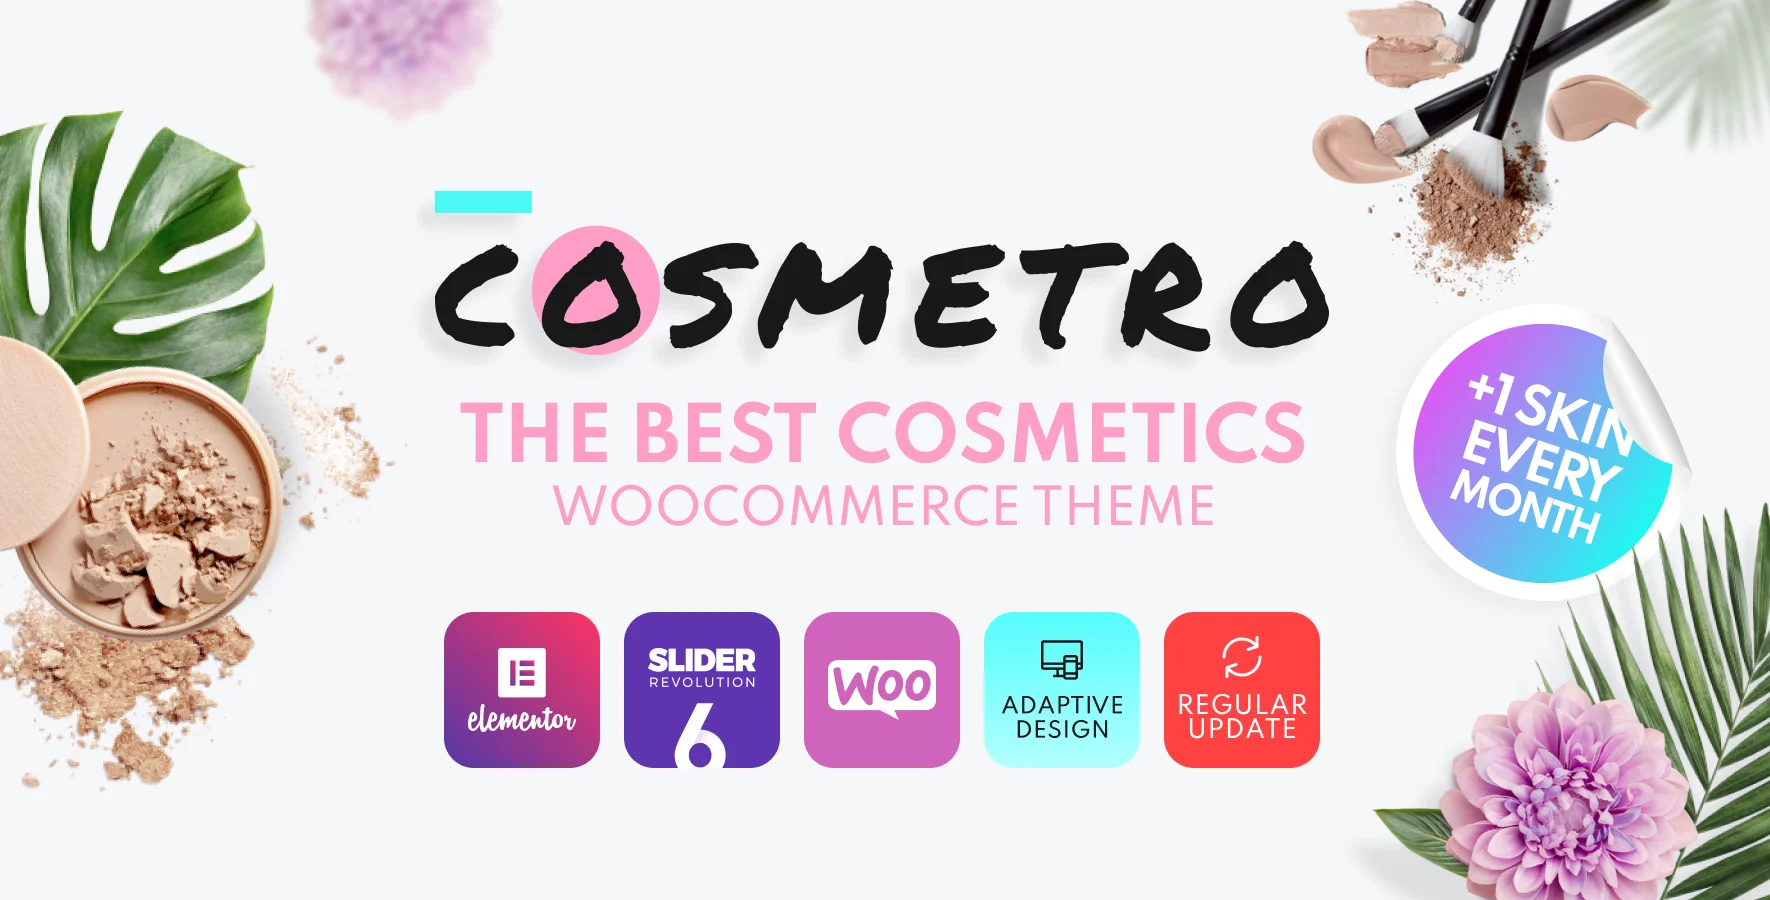 Cosmetro Cosmetics Theme